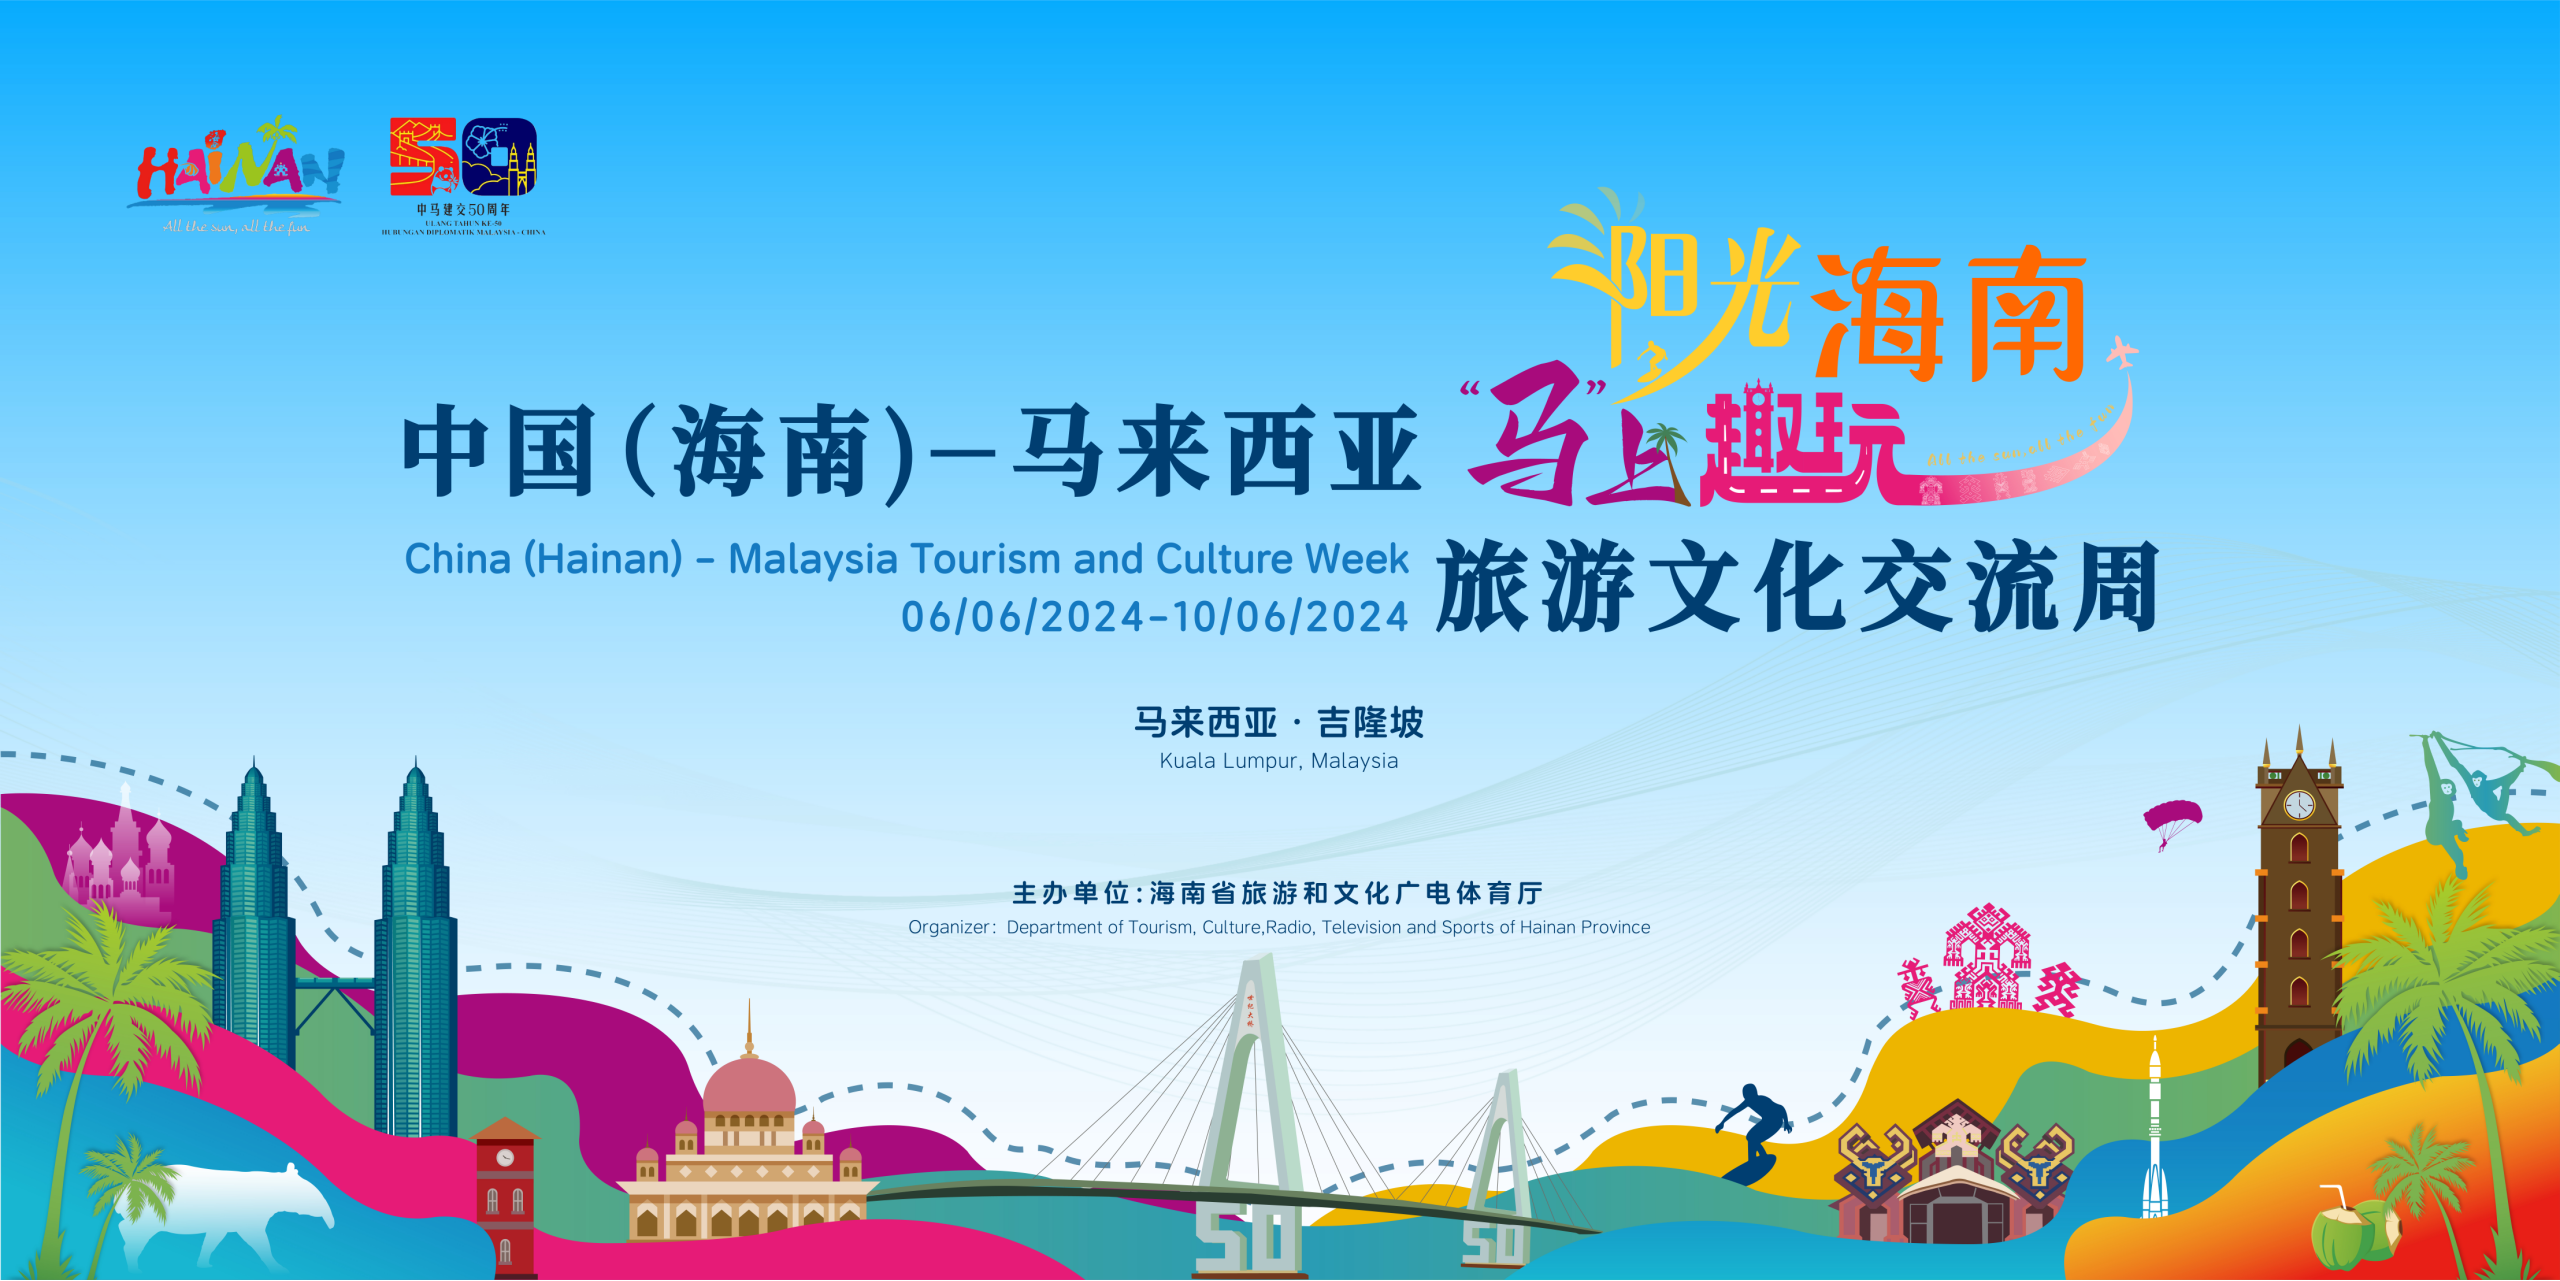 中国(海南)—马来西亚旅游文化交流周活动将于6月6日至10日在吉隆坡